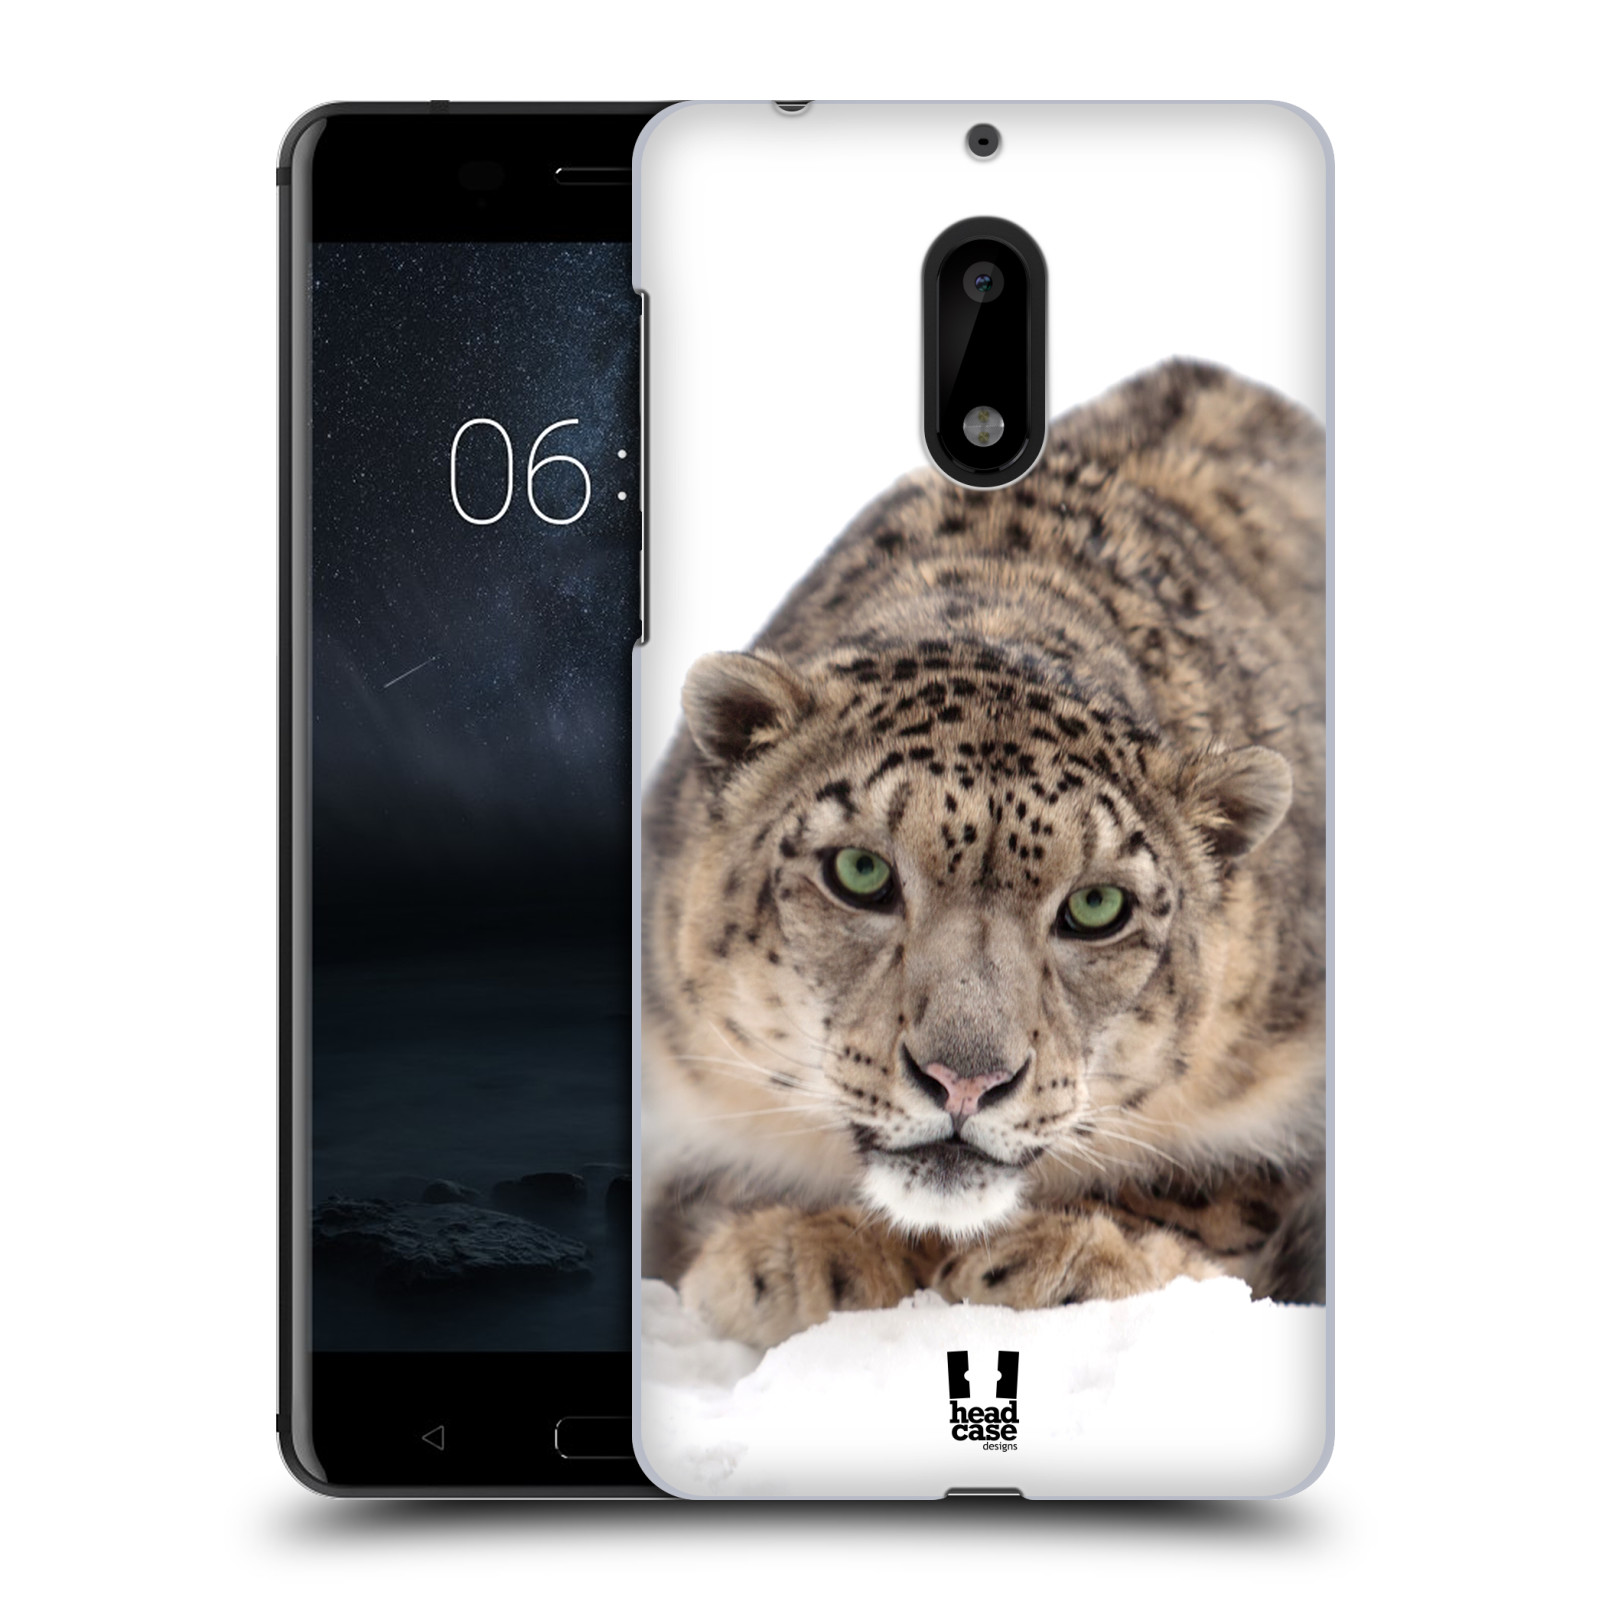 HEAD CASE plastový obal na mobil Nokia 6 vzor Divočina, Divoký život a zvířata foto SNĚŽNÝ LEOPARD